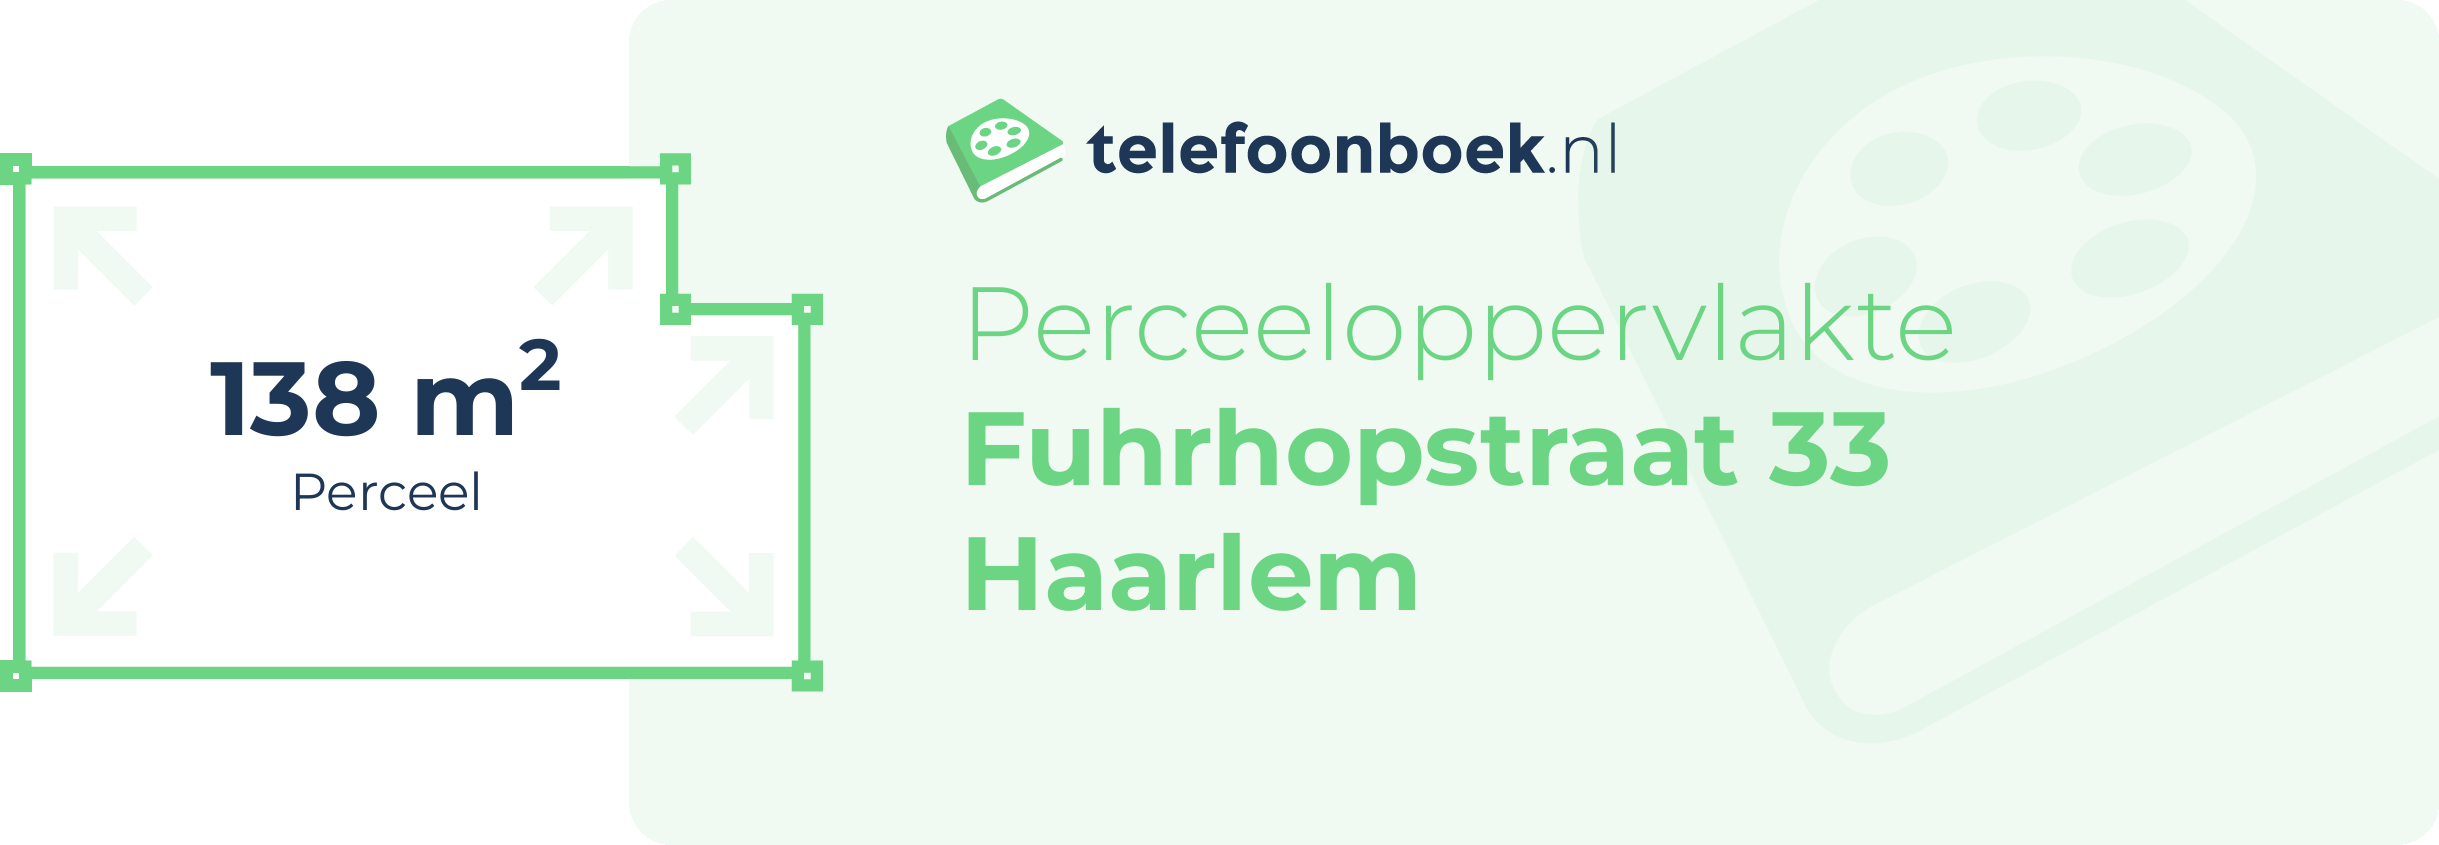 Perceeloppervlakte Fuhrhopstraat 33 Haarlem